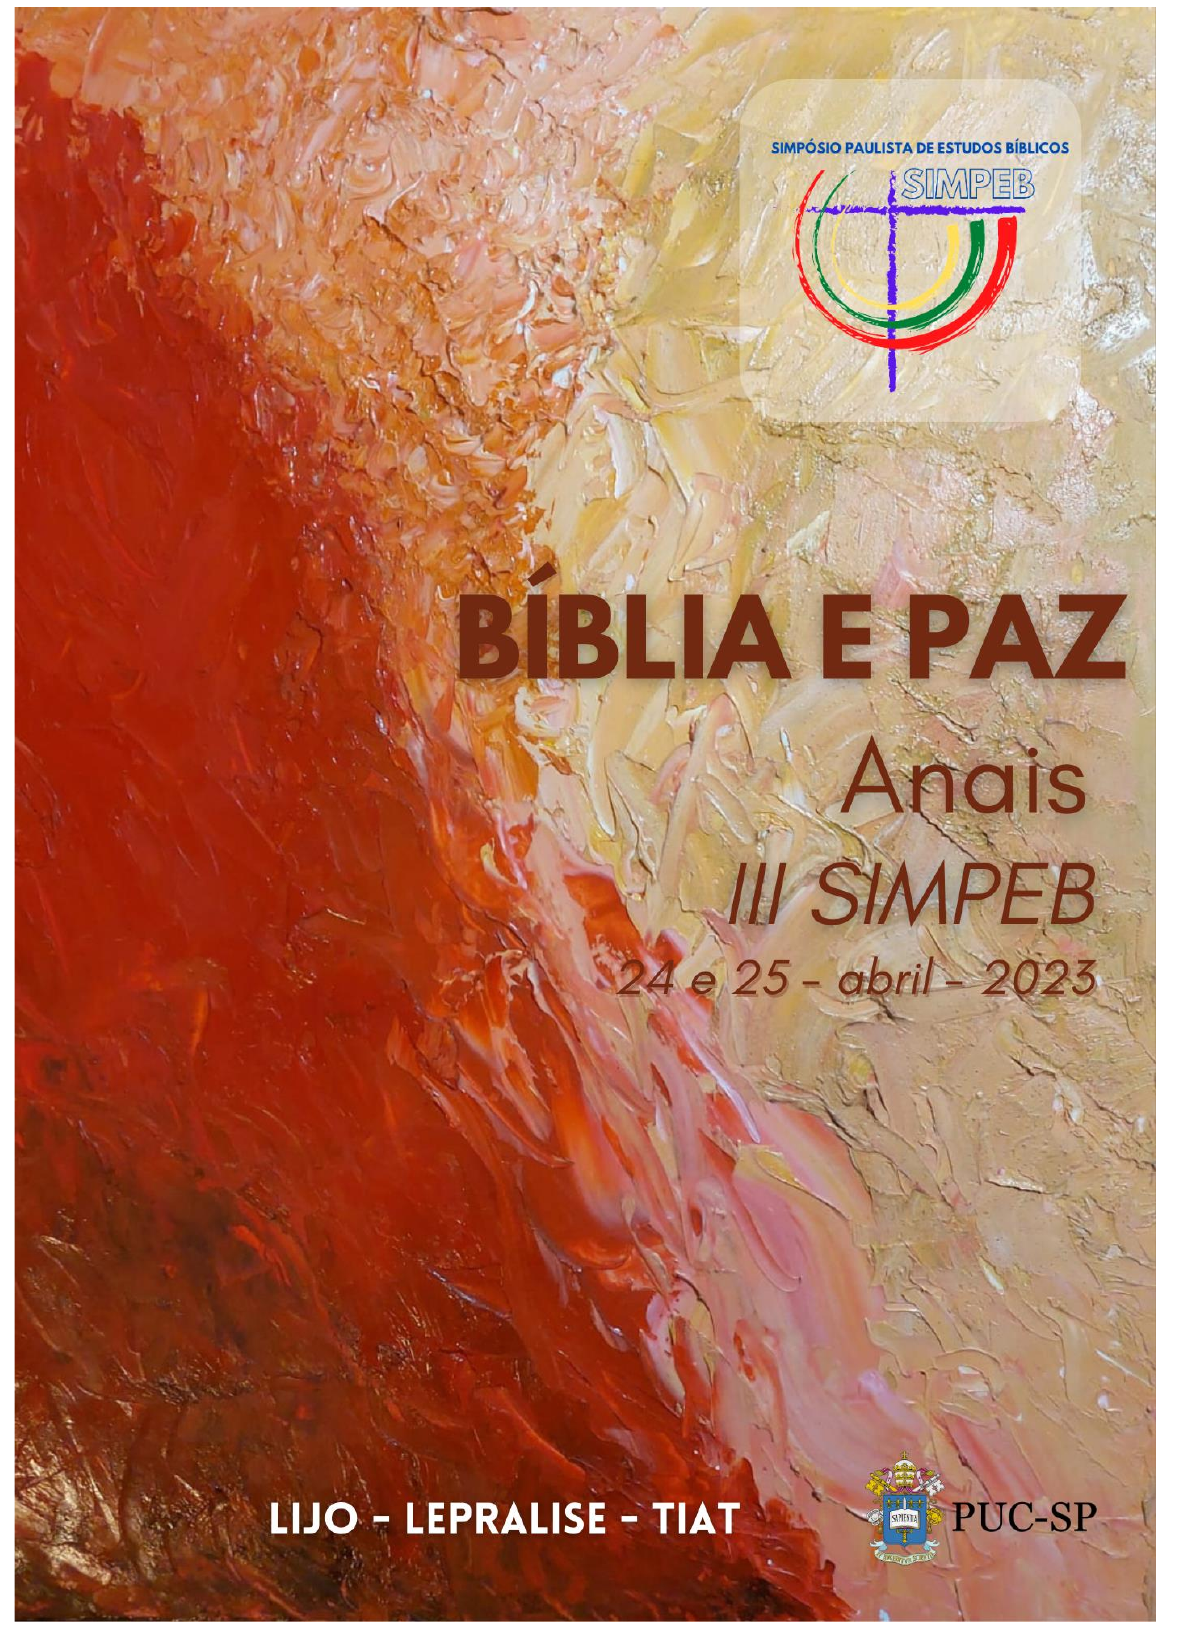 Quiz Bíblico - Jônatas Lopes dos Santos